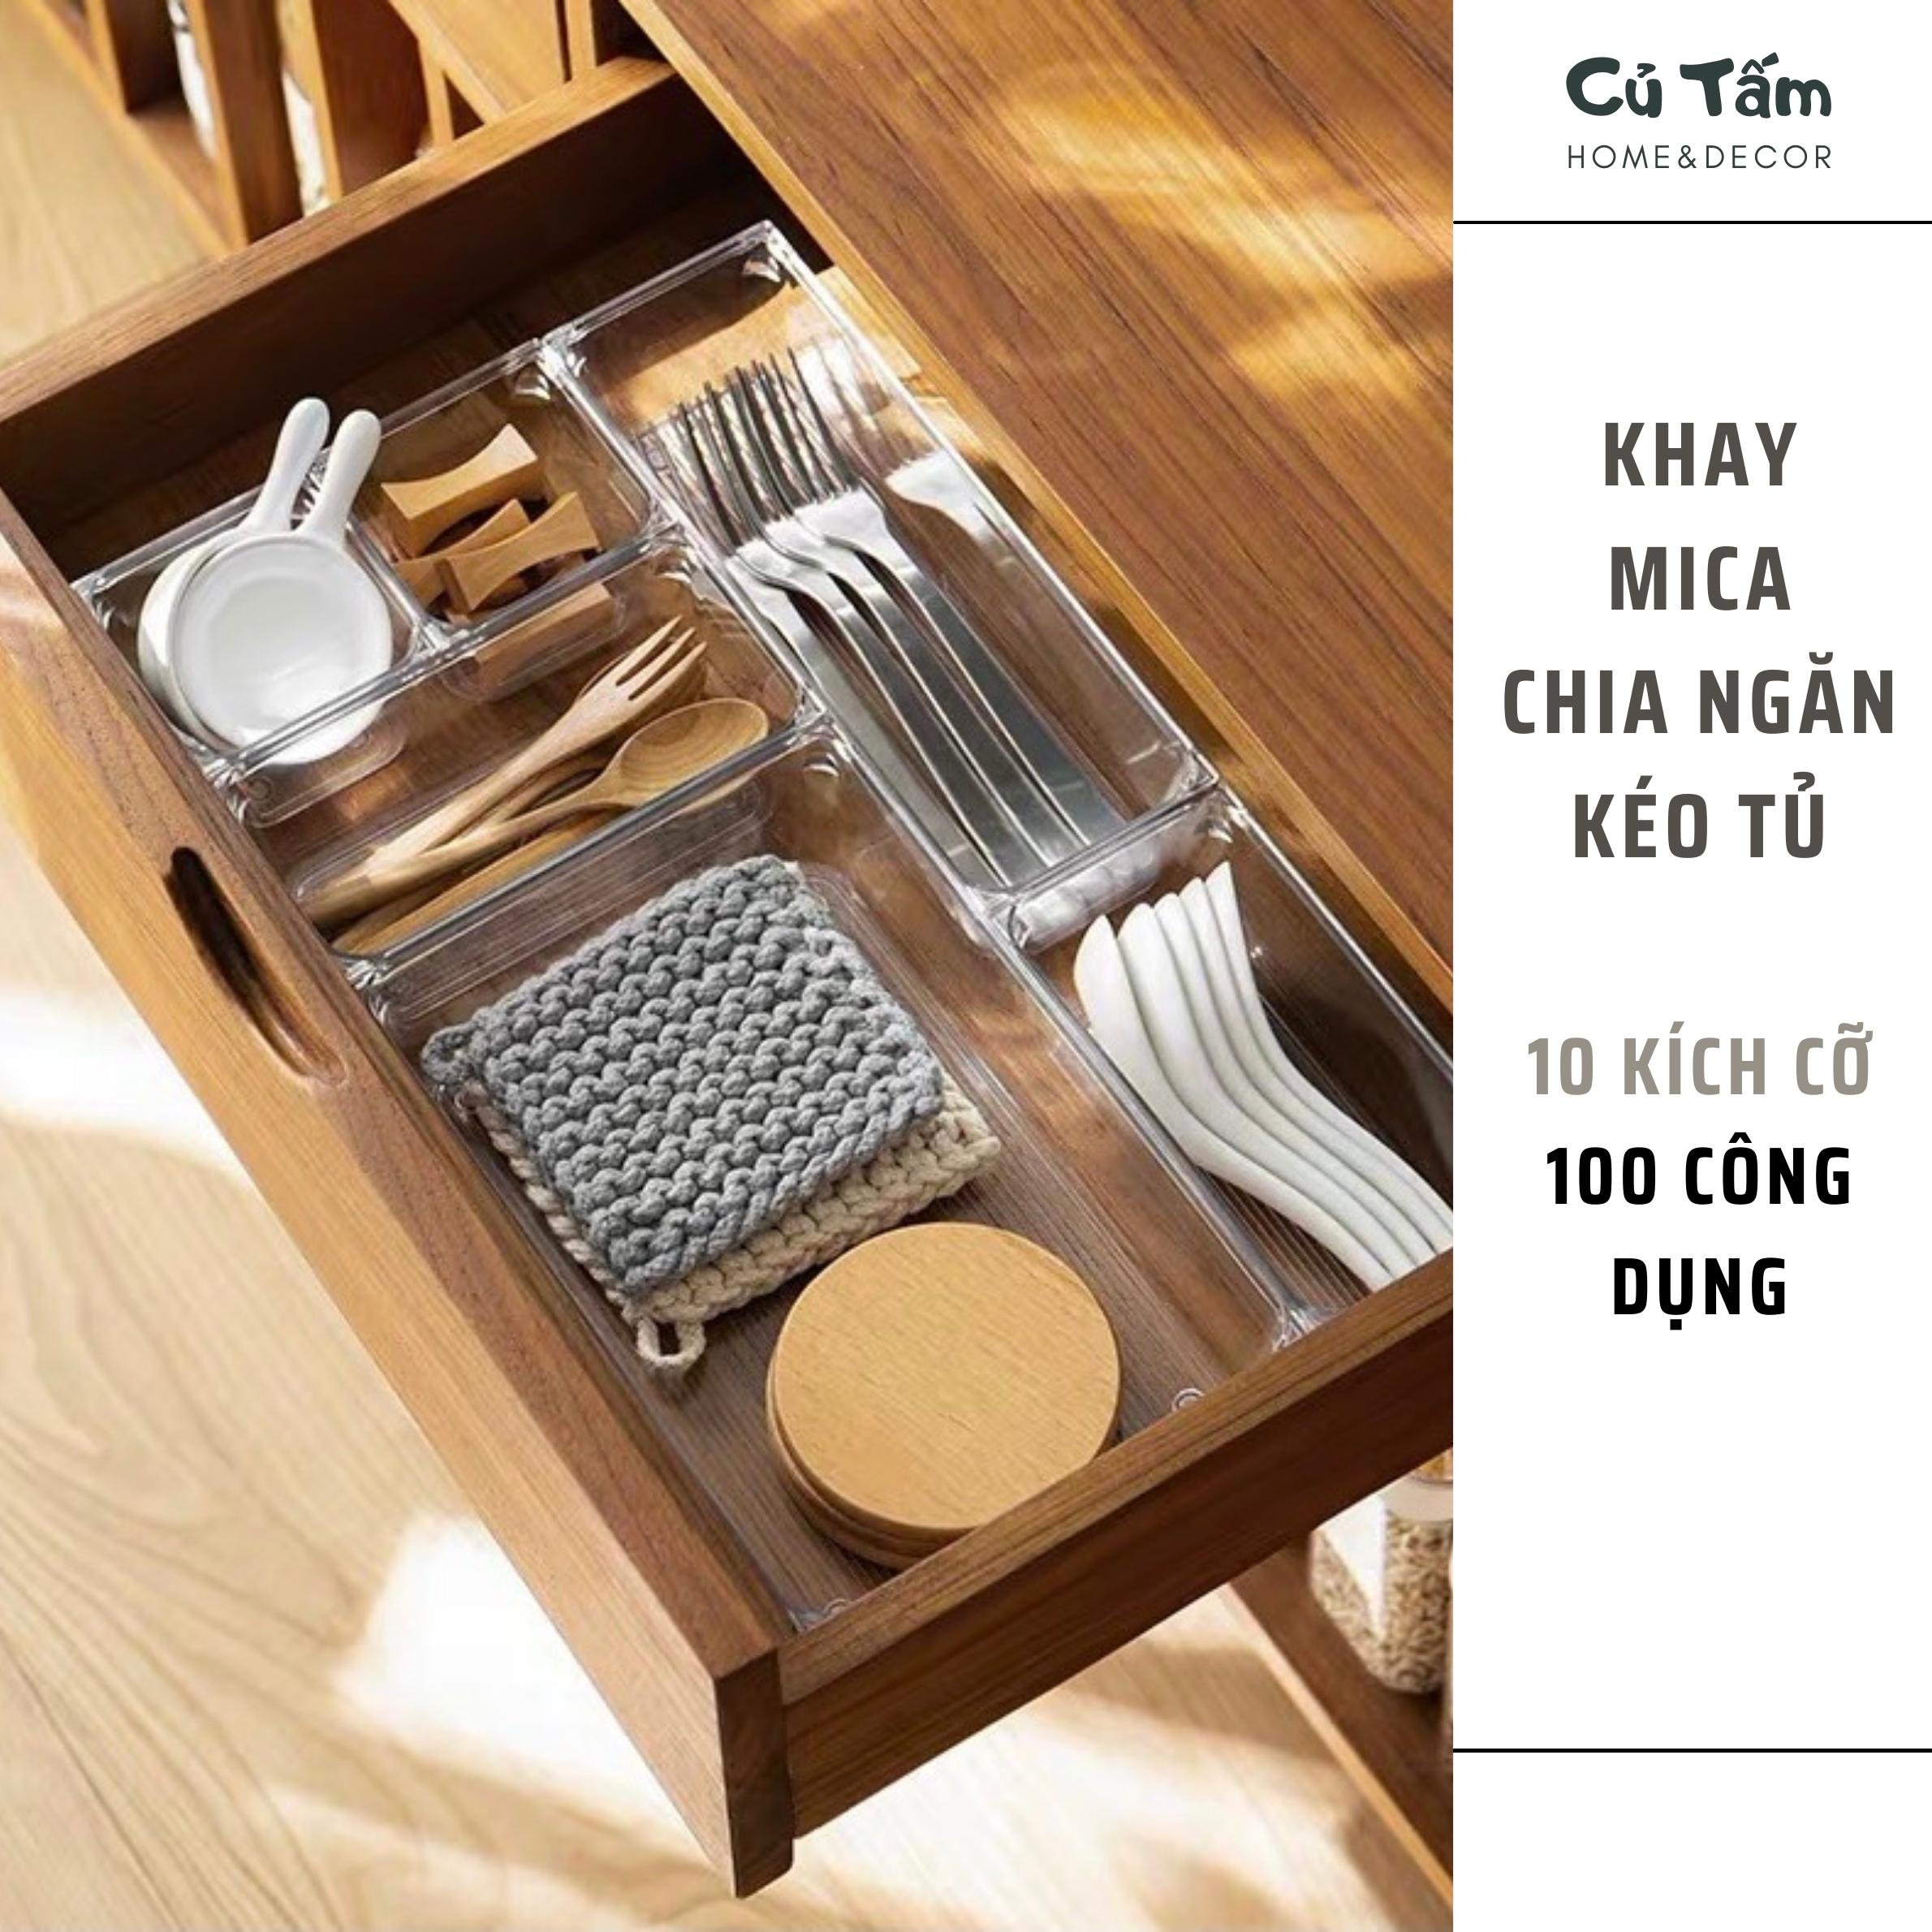 Bộ Khay Chia Ngăn Kéo Tủ Nhiều Size, Khay mica đựng đồ dùng chia ngăn trong suốt tiện dụng